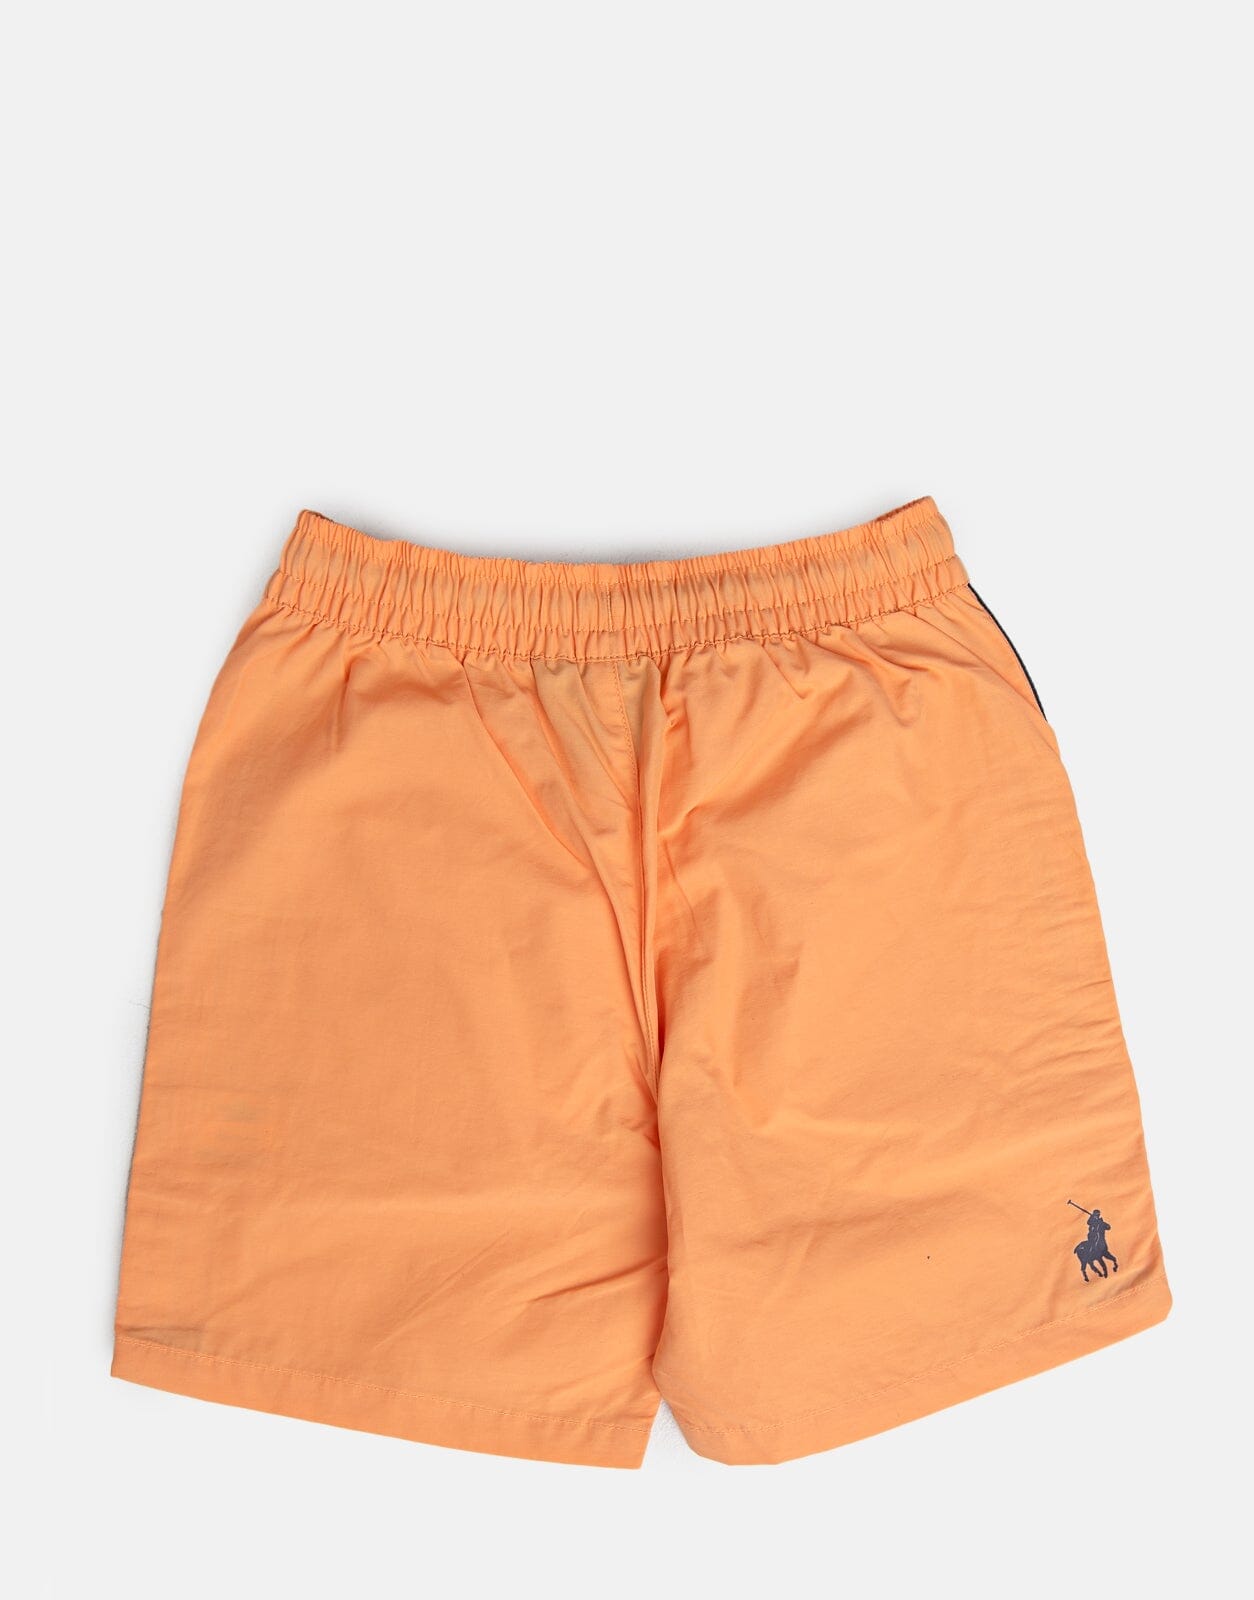 Polo Boys Ayden Cut and Sew Shorts - Subwear